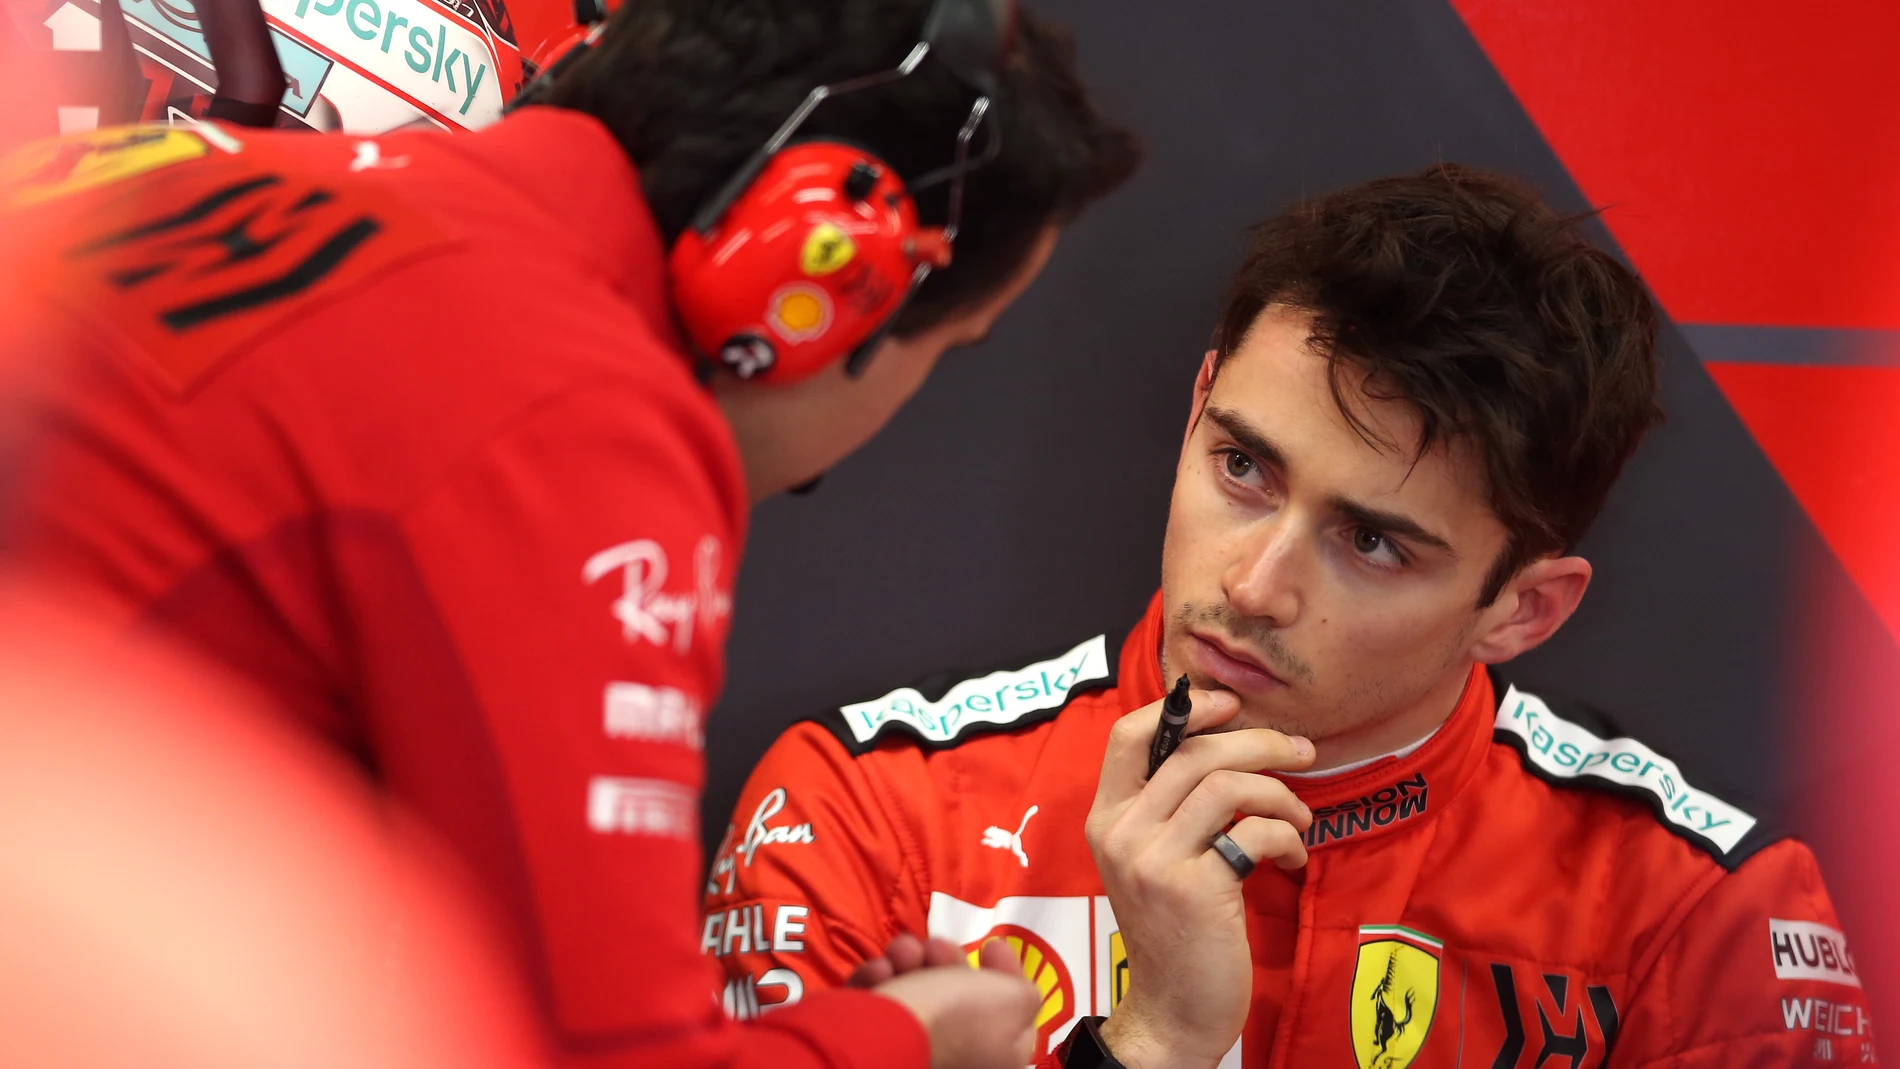 Charles Leclerc en el box de Ferrari 